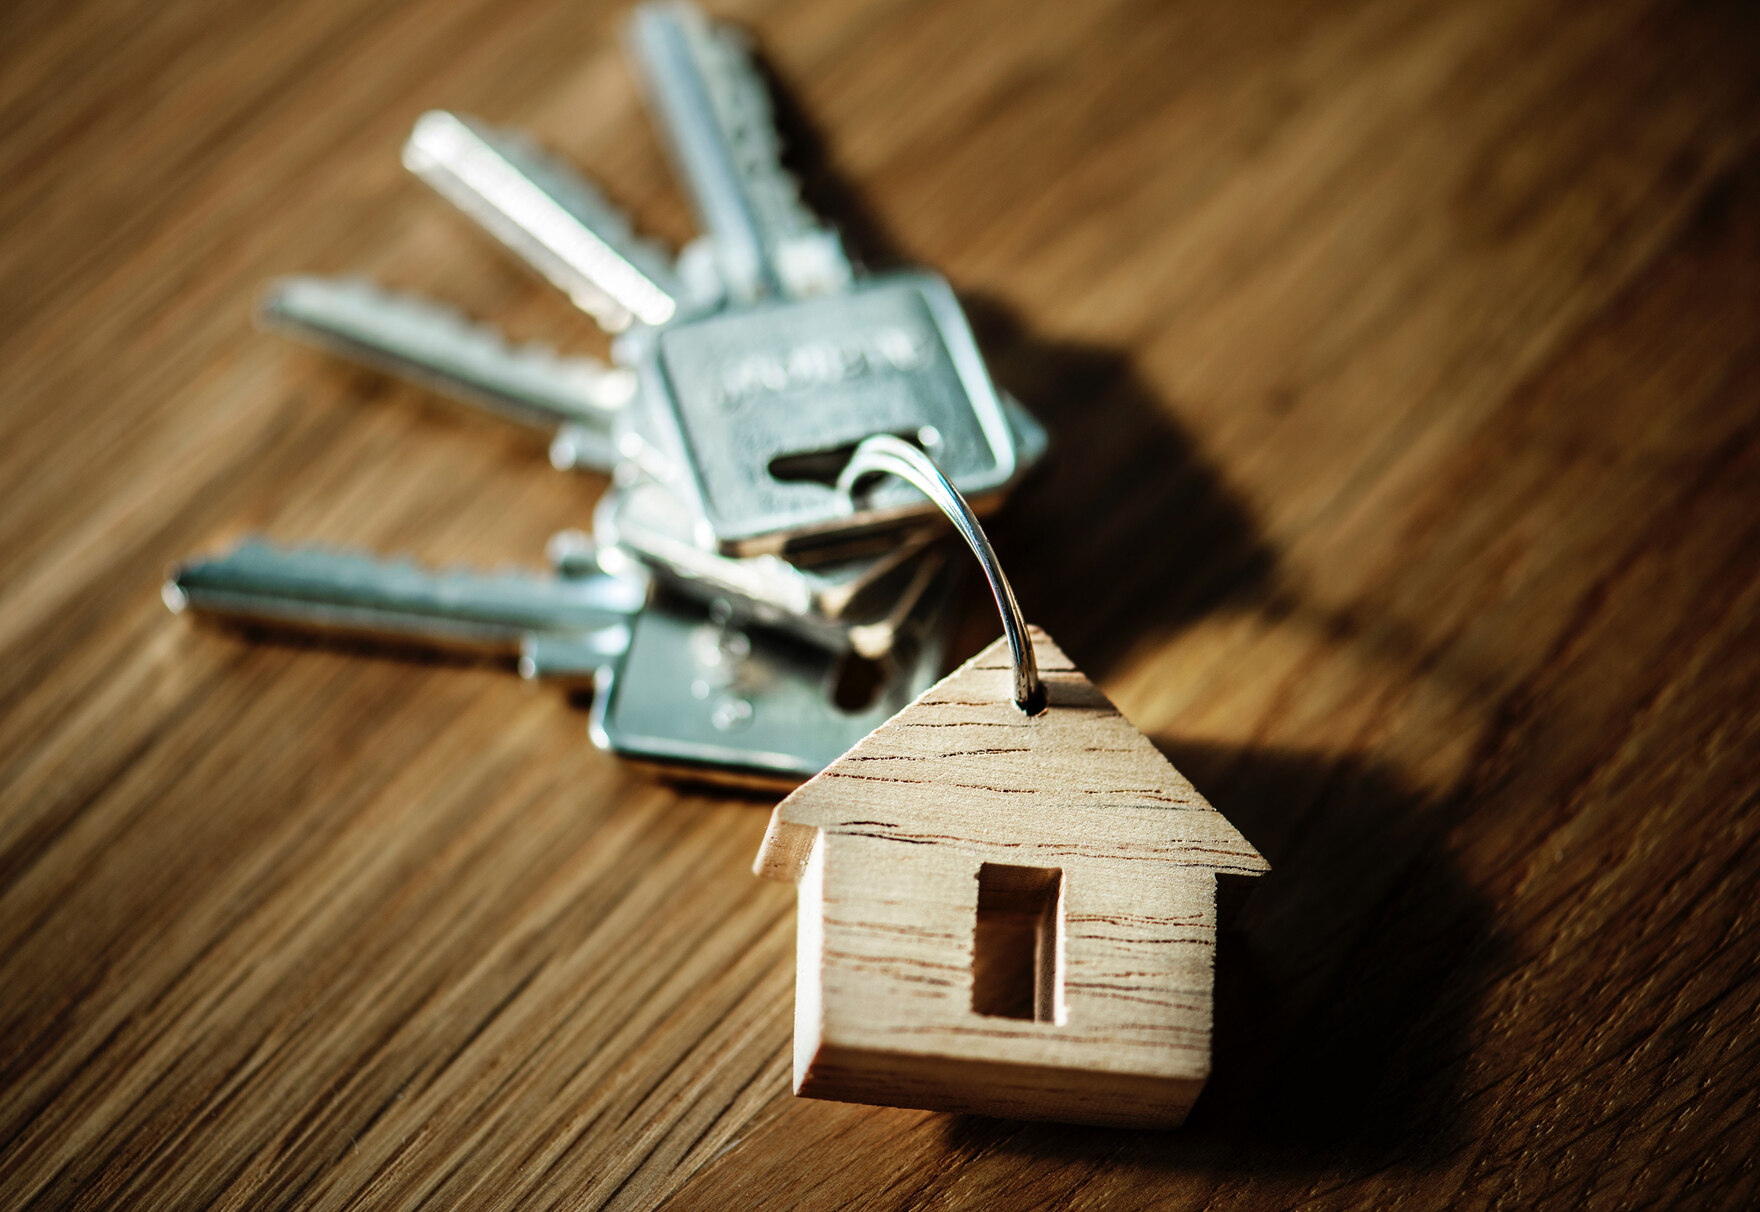 Ein Schlüsselbund mit einem kleinen Holzanhänger in Hausform.